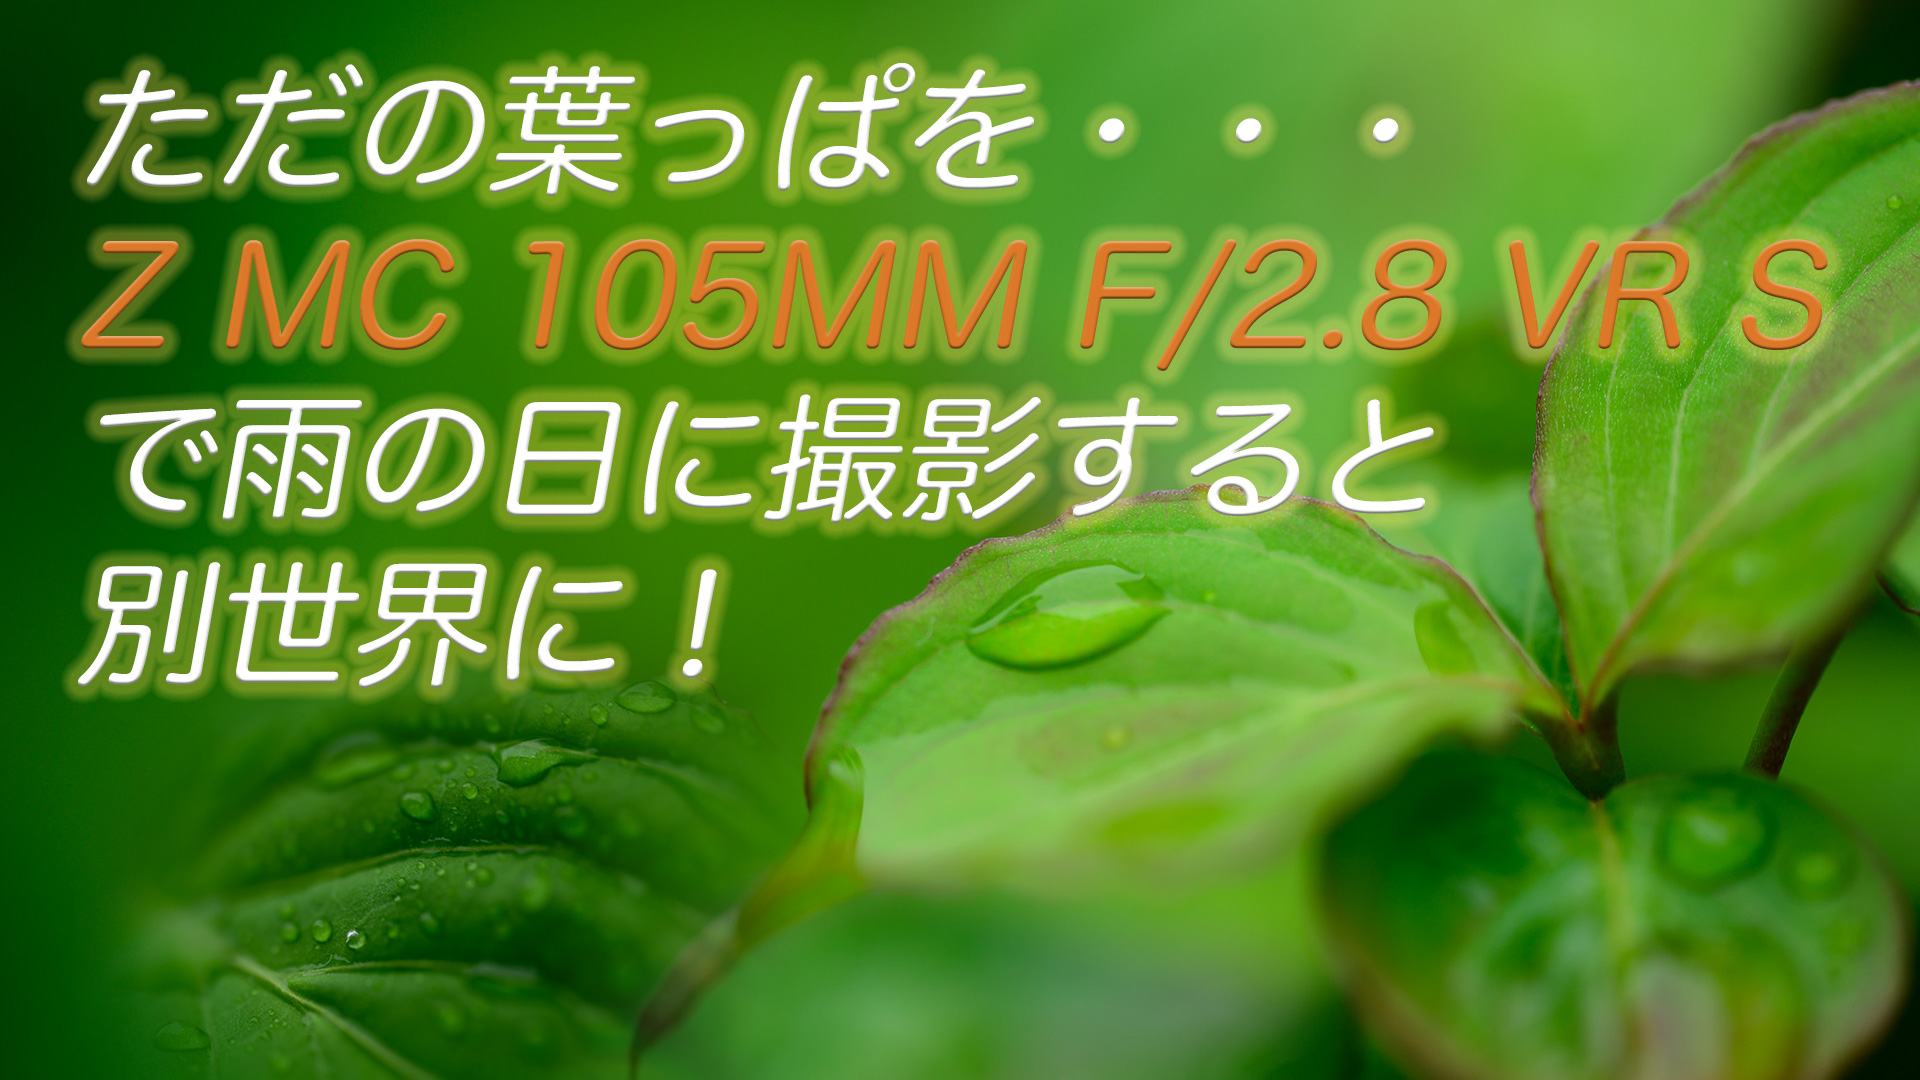 ZMC105mmで葉っぱをマクロ撮影